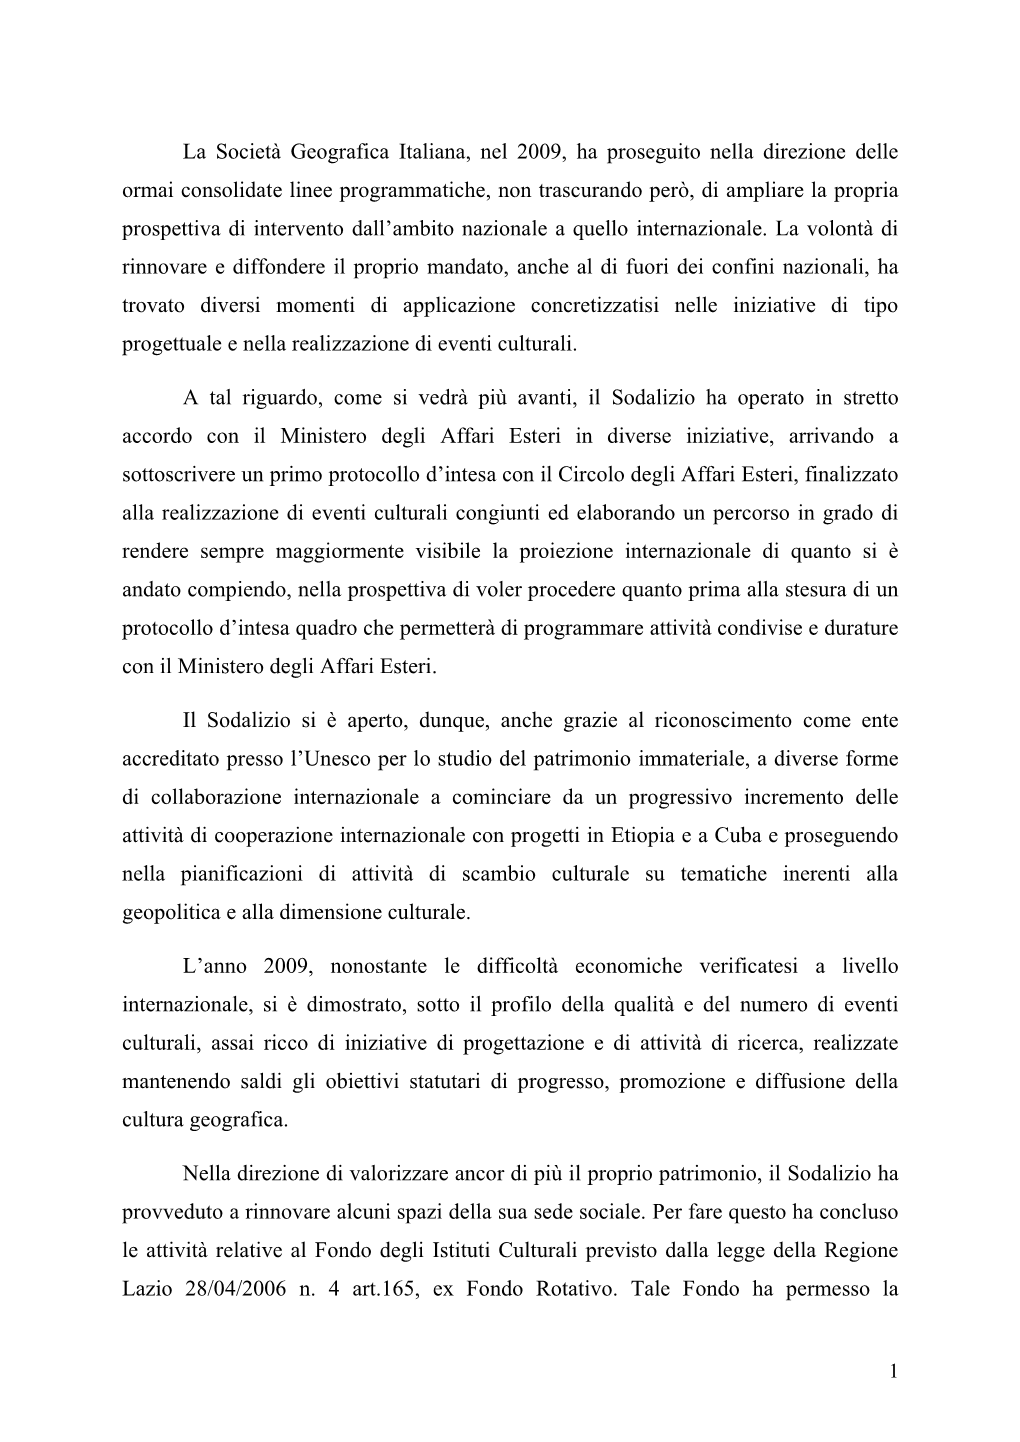 La Società Geografica Italiana, Nel 2009, Ha Proseguito Nella Direzione